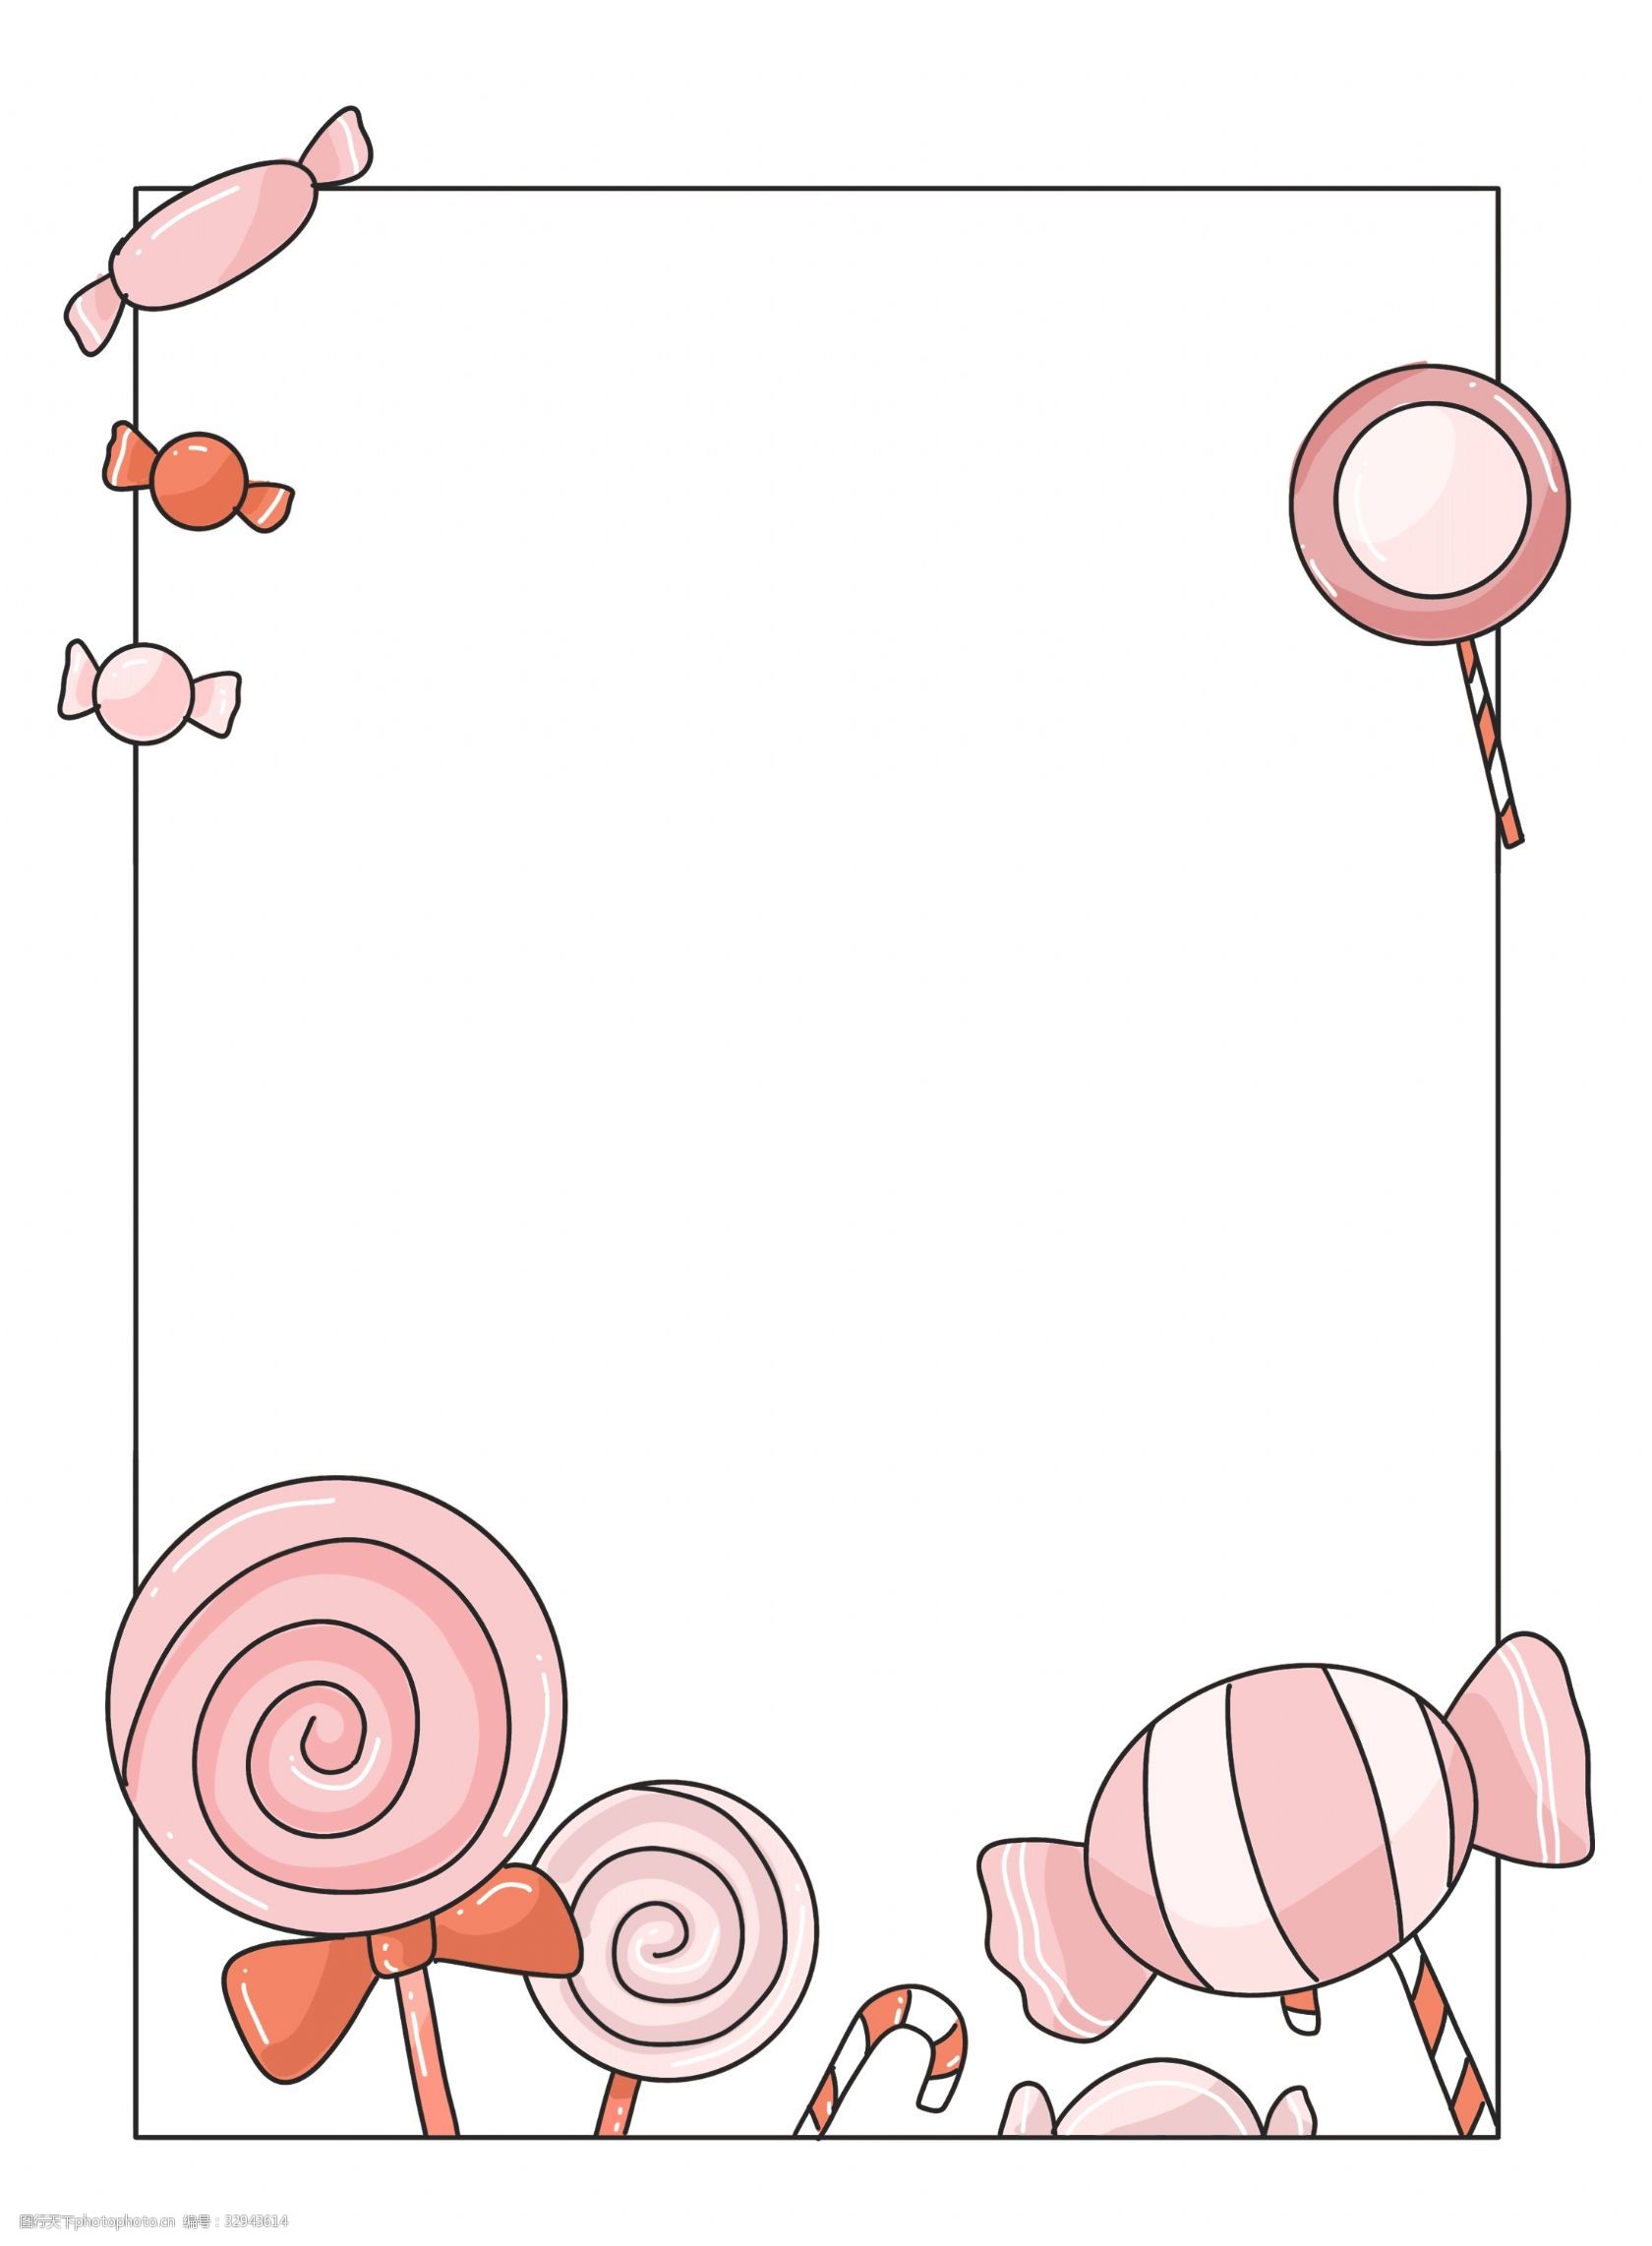 关键词:粉色的糖果的边框 粉色的糖果 卡通边框 美丽边框 漂亮边框 小